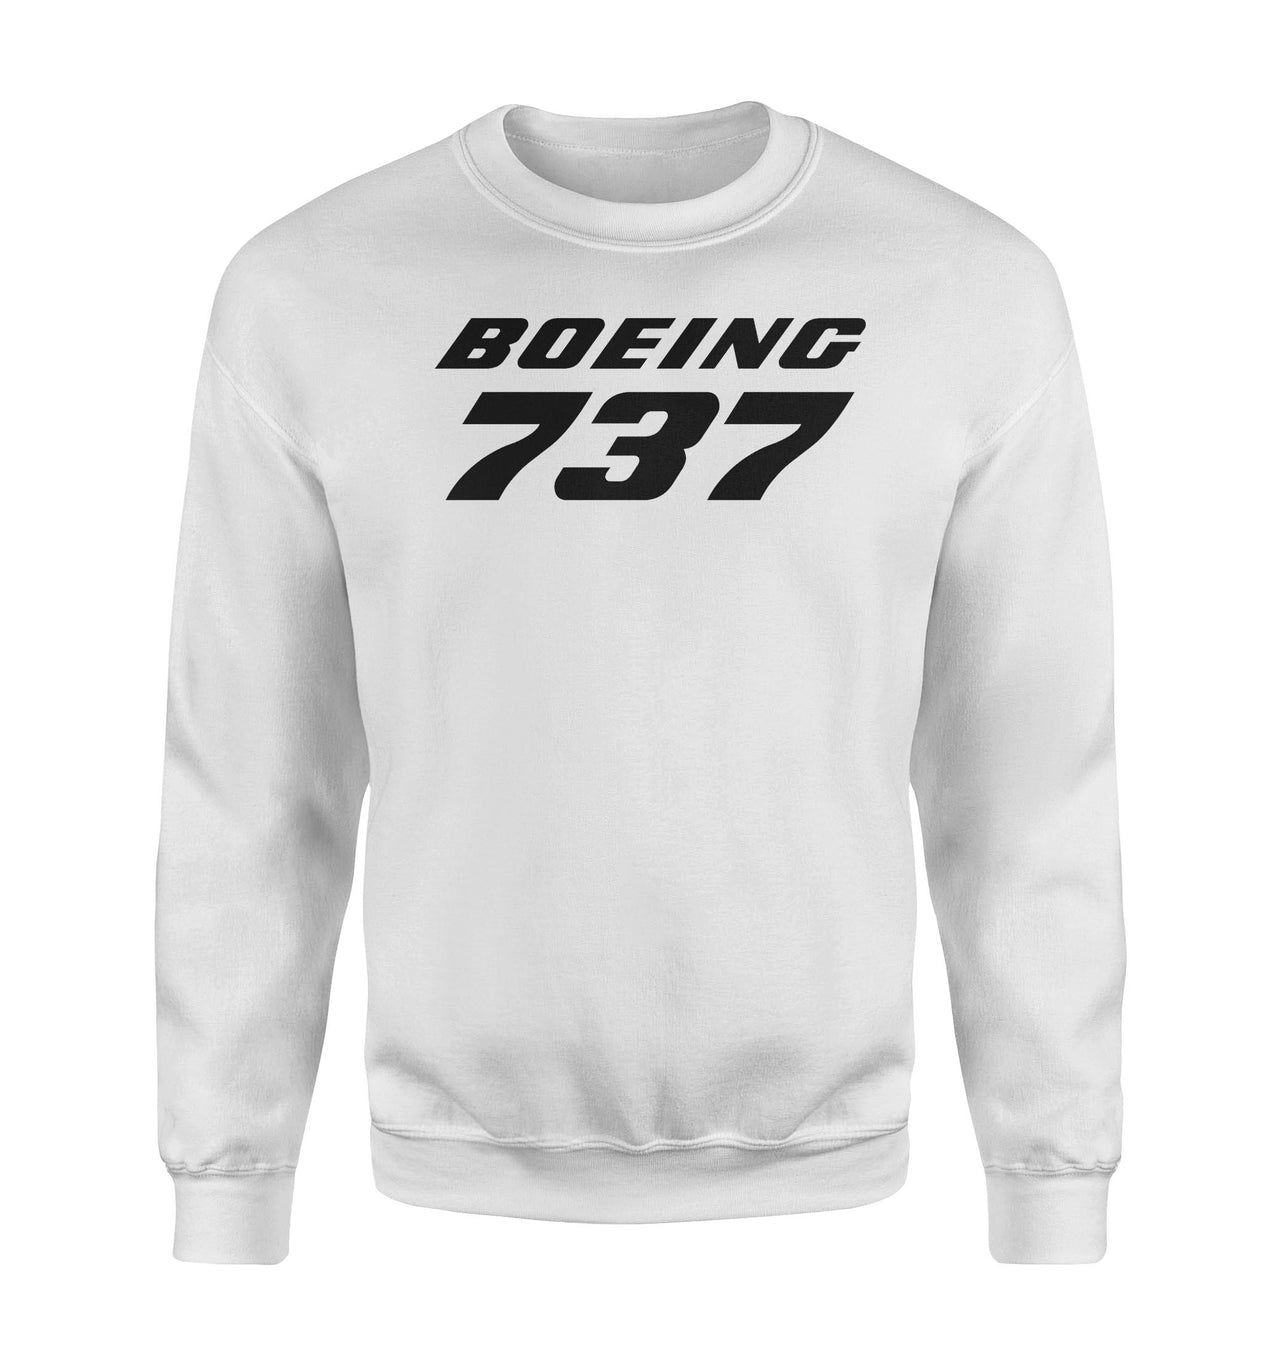 Boeing 737 & Text Designed Sweatshirts